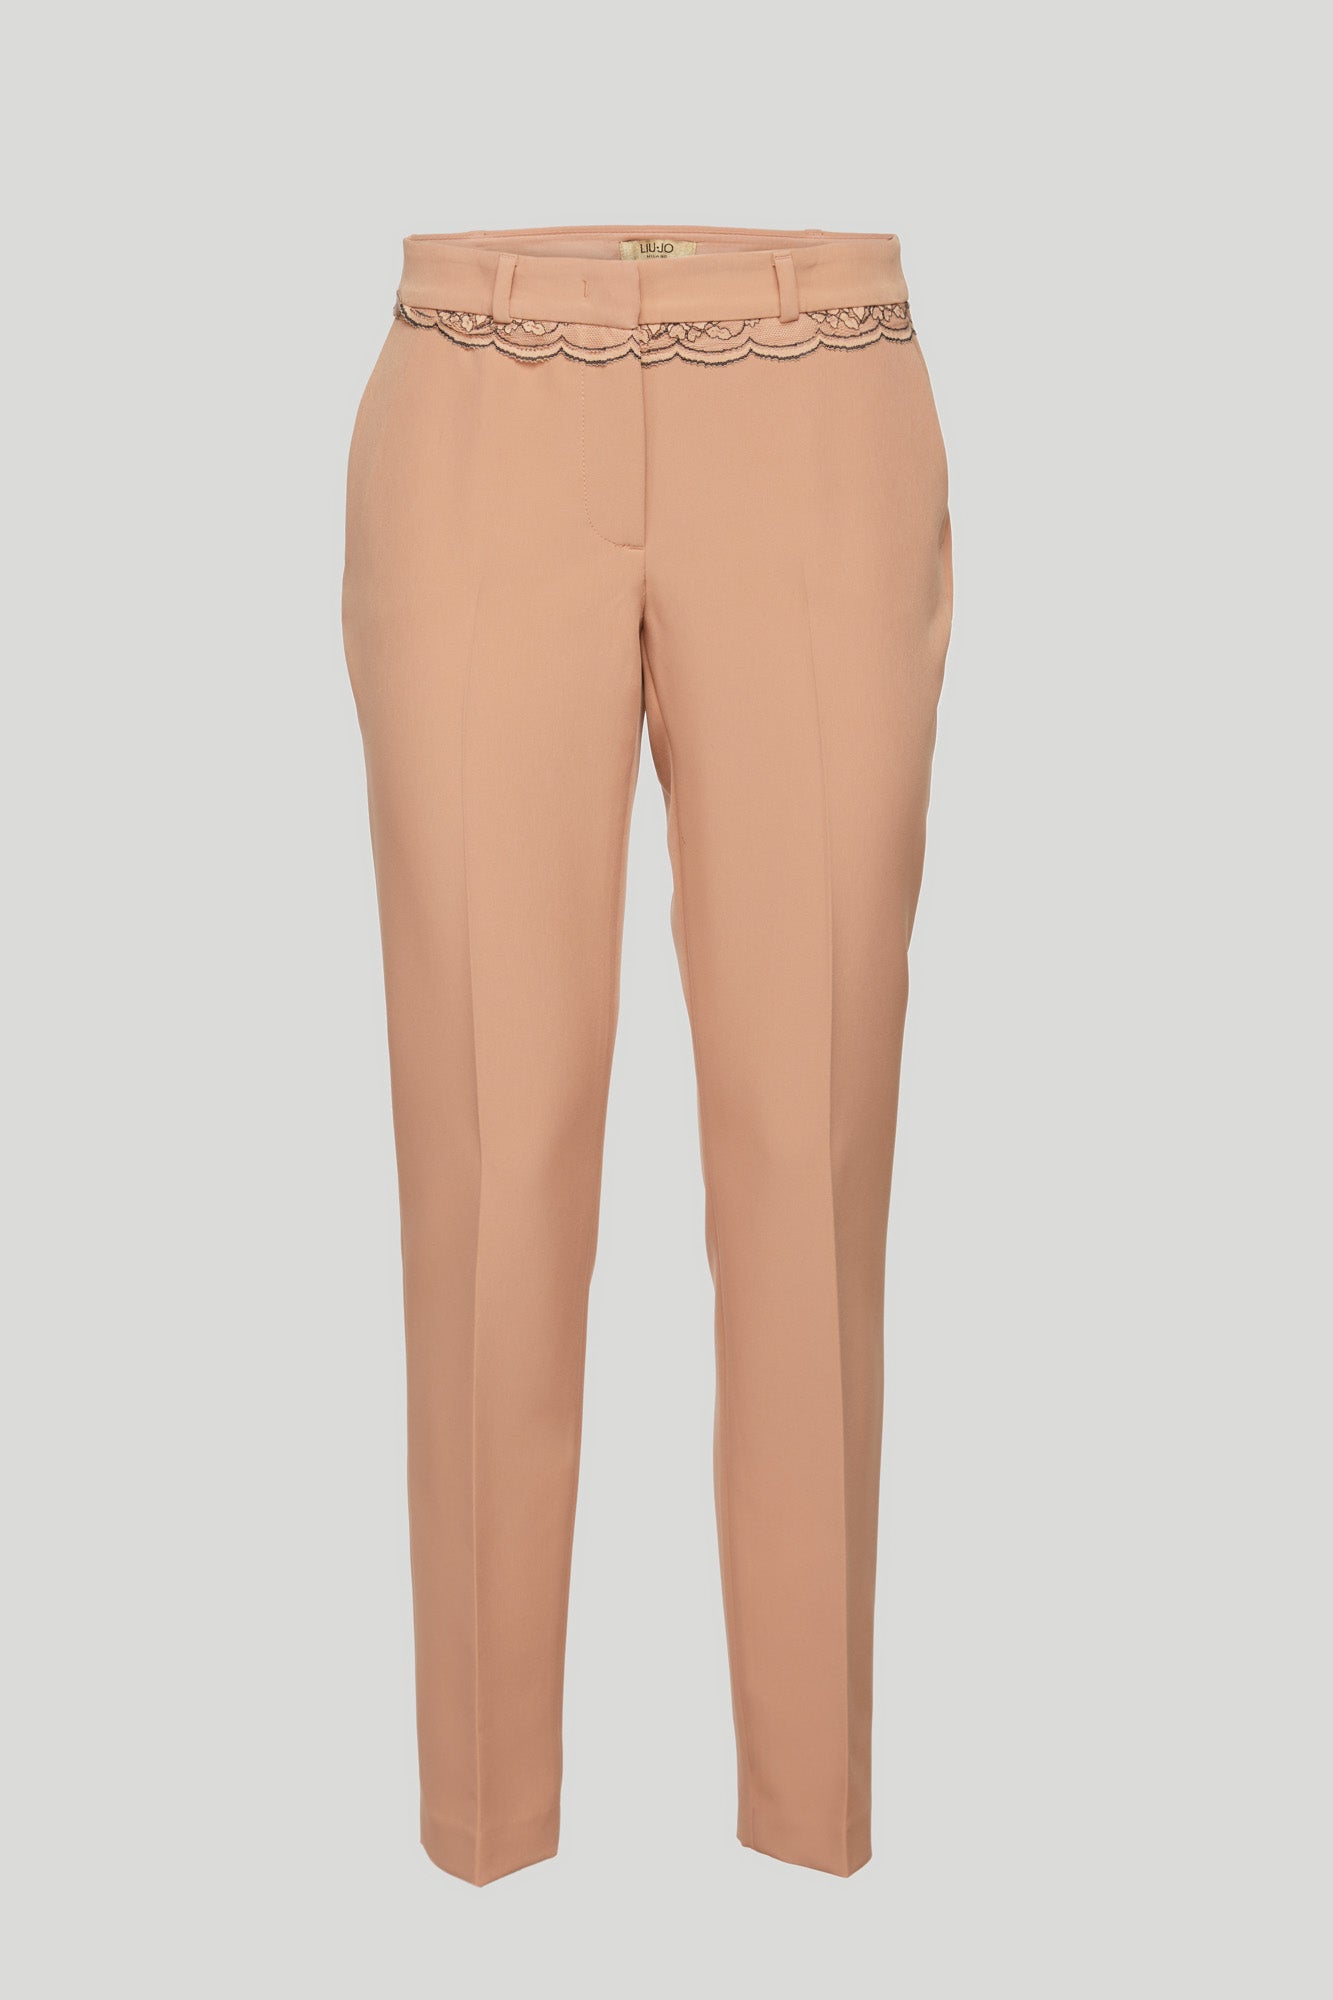 LIU-JO Pink Lace Trousers